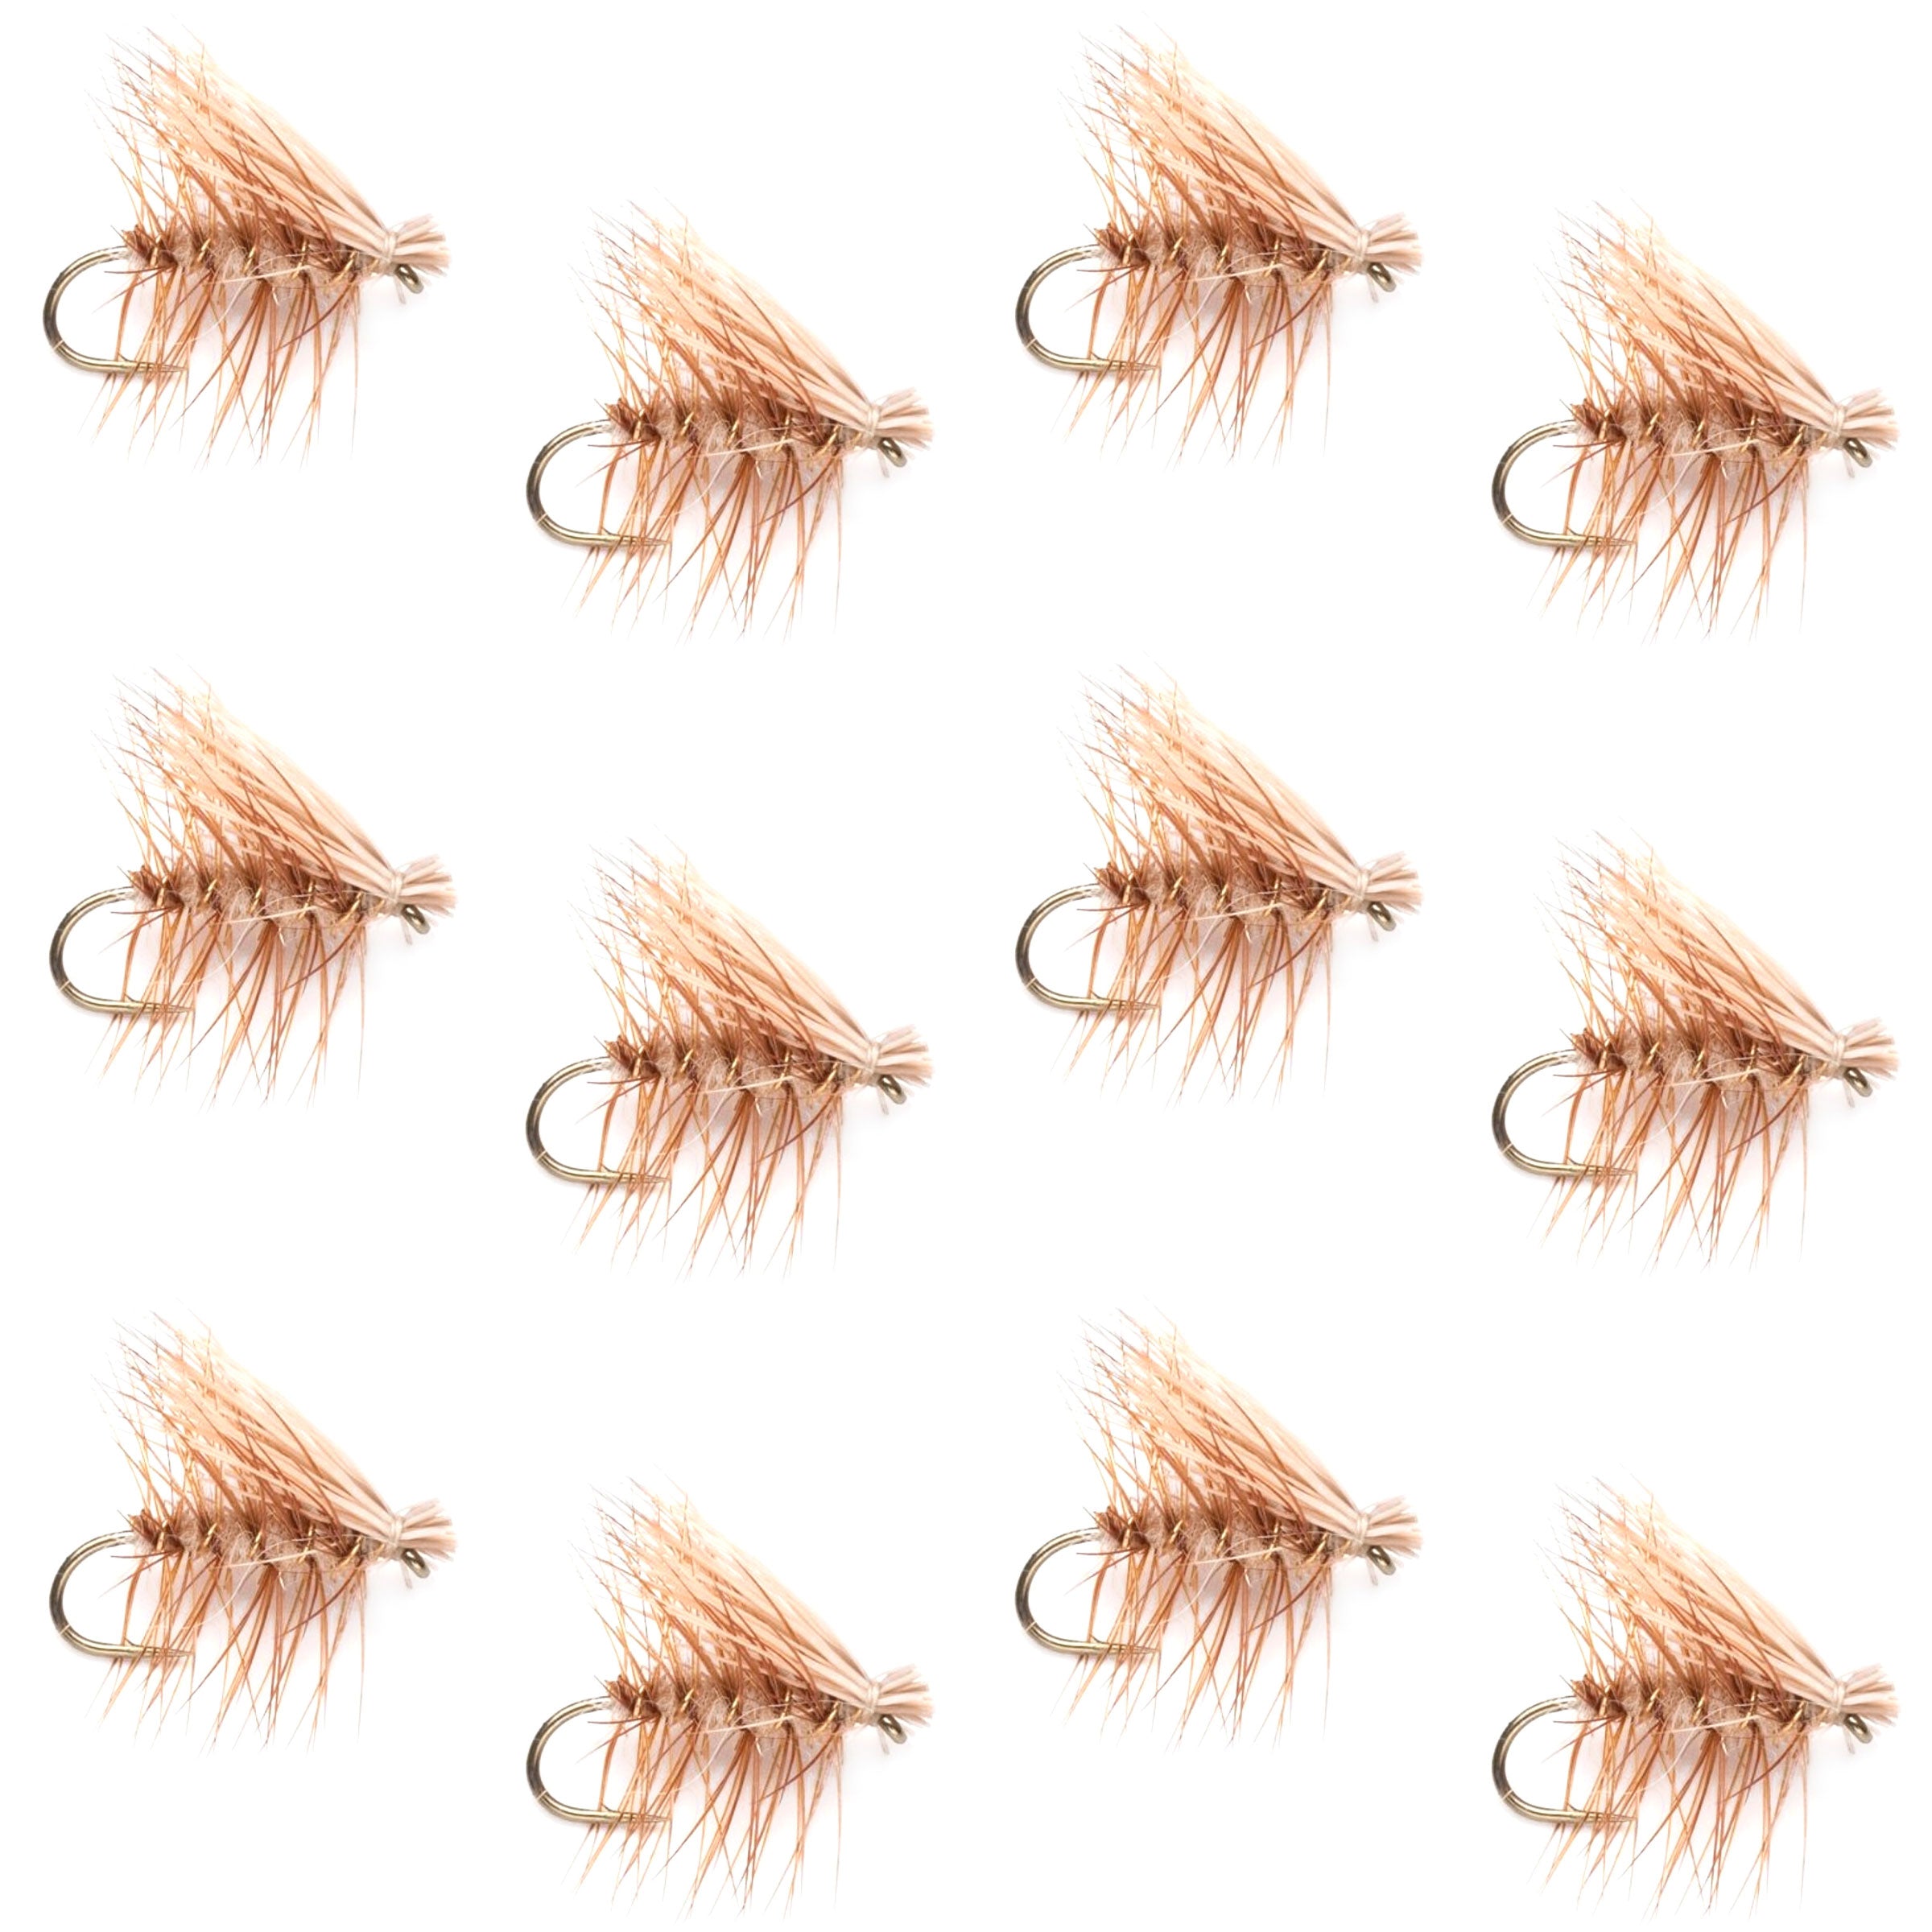 Barbless Tan Elk Hair Caddis Classic Trout Dry Flies 1 Dozen Flies Size 12